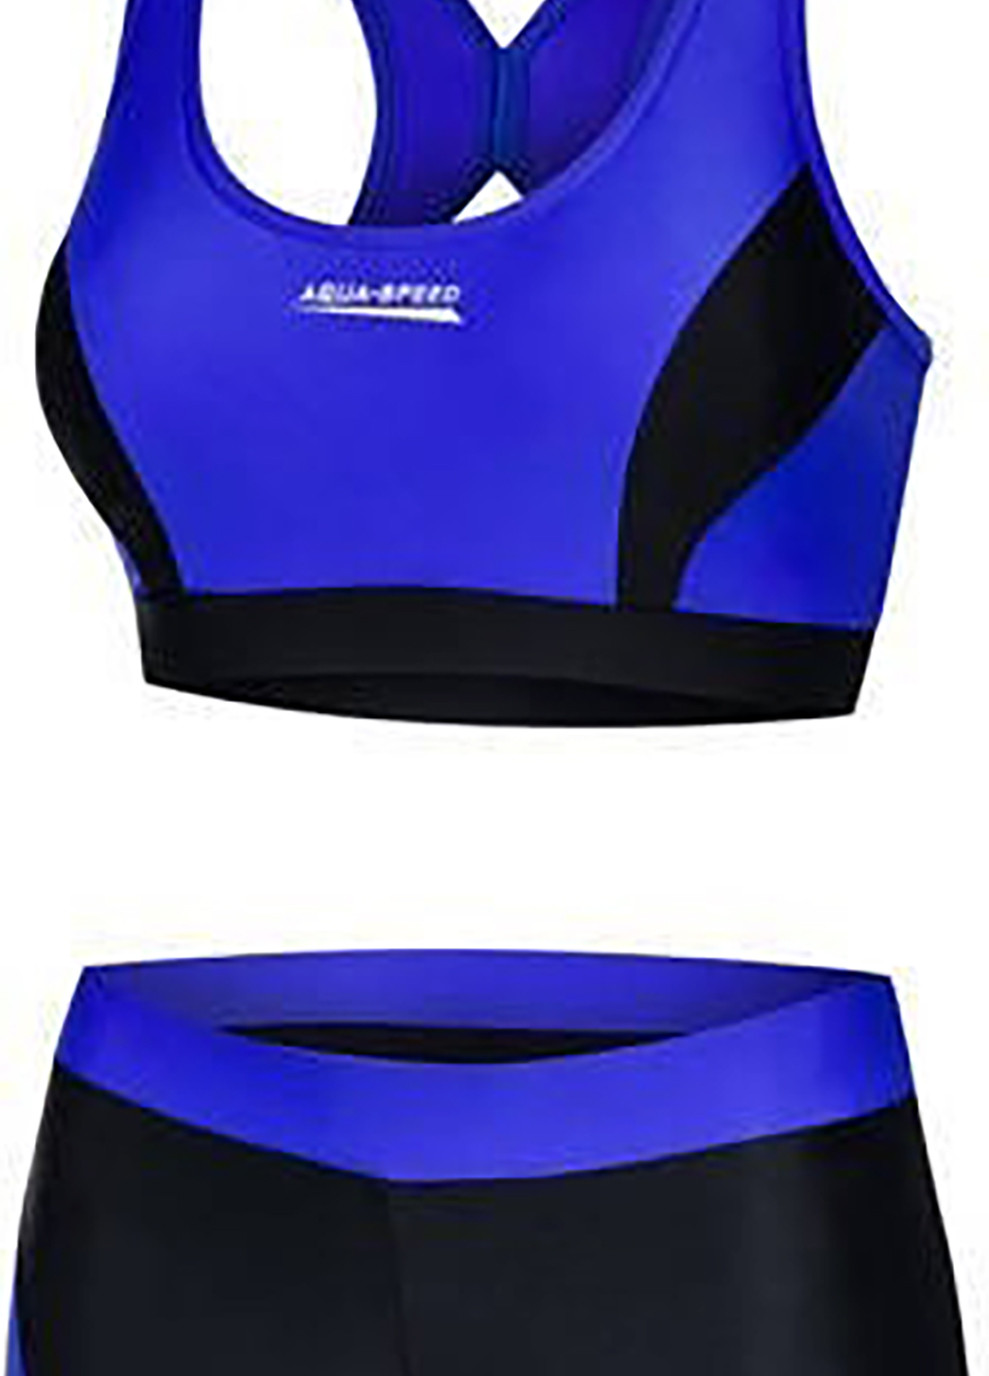 Комбинированный демисезонный купальник роздельный для женщин fiona 6455 черный, синий жен Aqua Speed